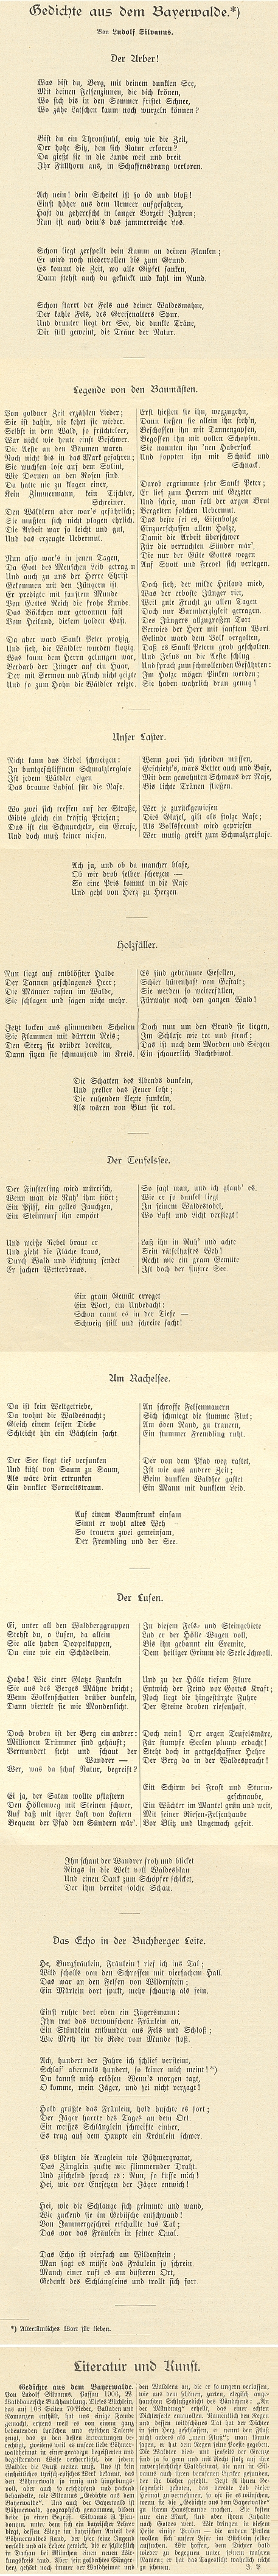 Několik ukázek z jeho básnické sbírky "Gedichte dem Byerwalde" otiskl Johann Peter v posledním ročníku svého prachatického časopisu "Der Böhmerwald"